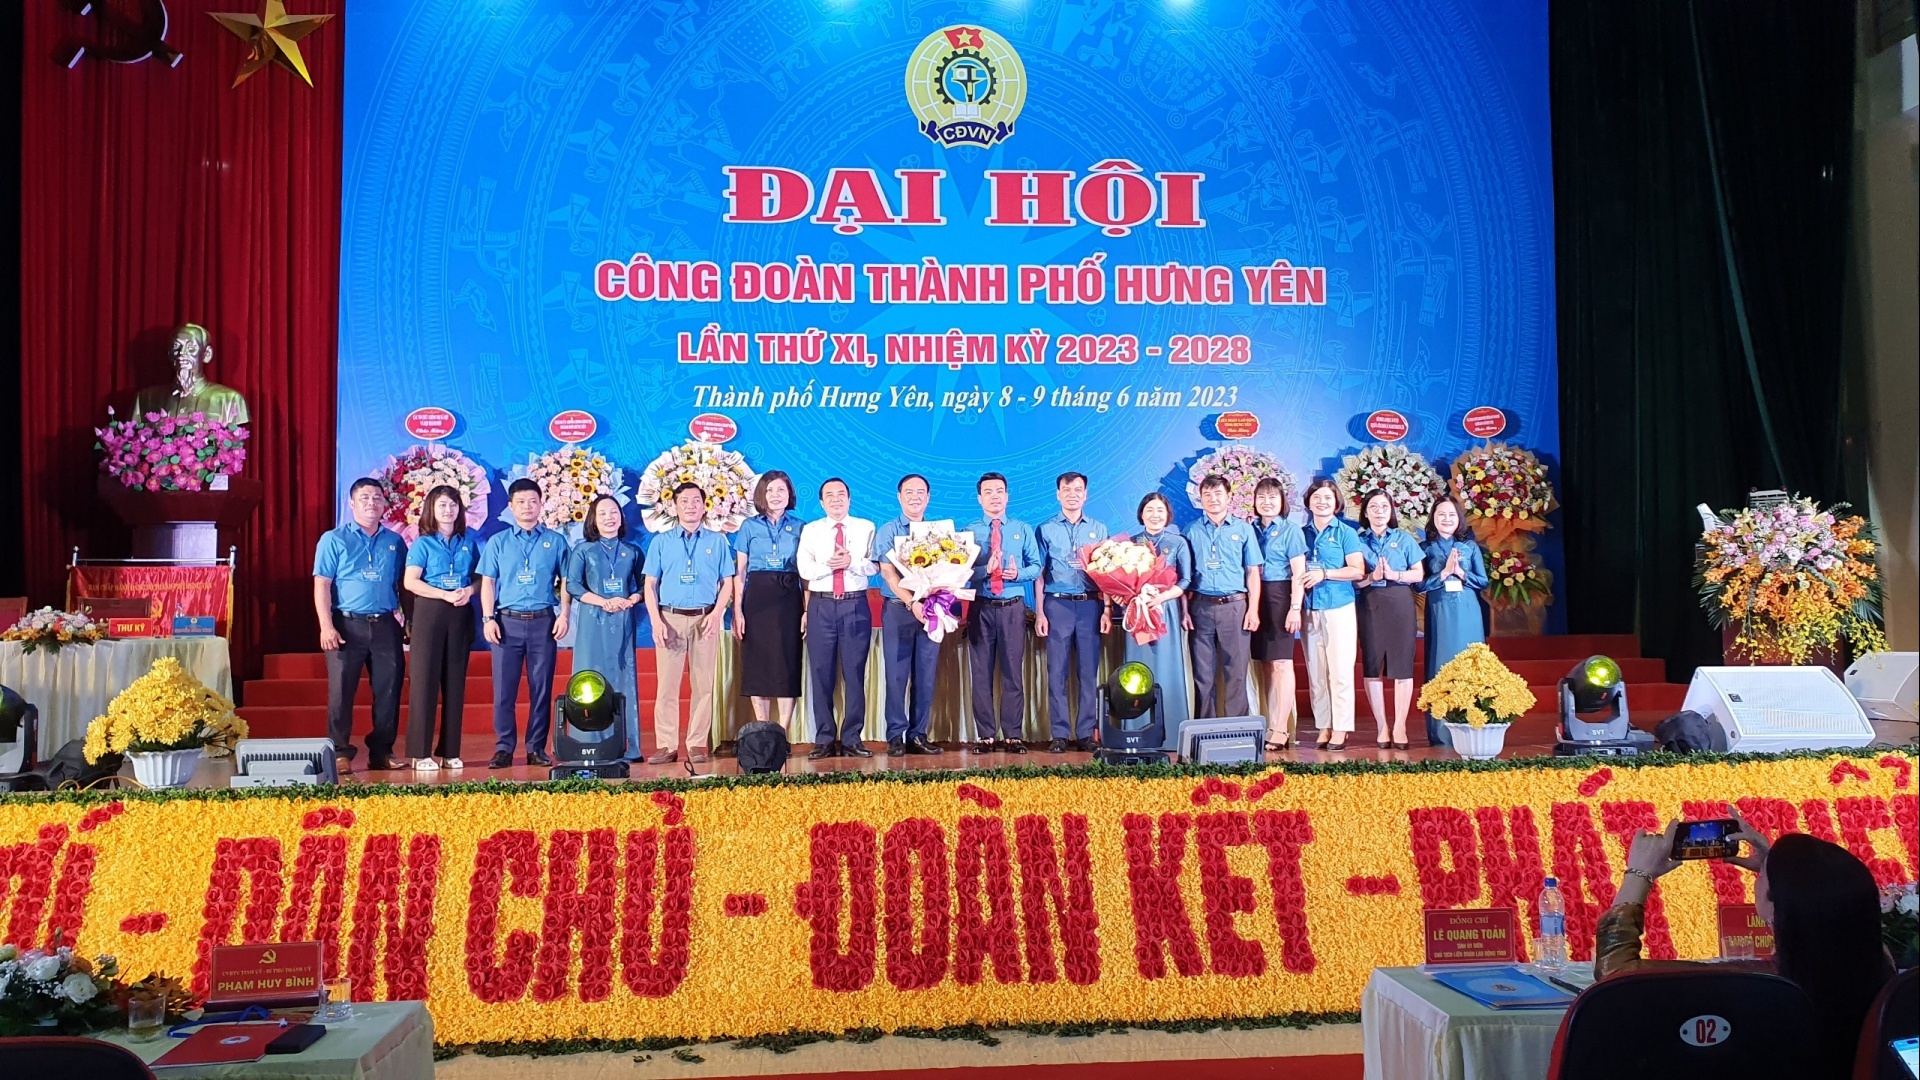 Đại hội Công đoàn thành phố Hưng Yên khóa XI, nhiệm kỳ 2023 - 2028